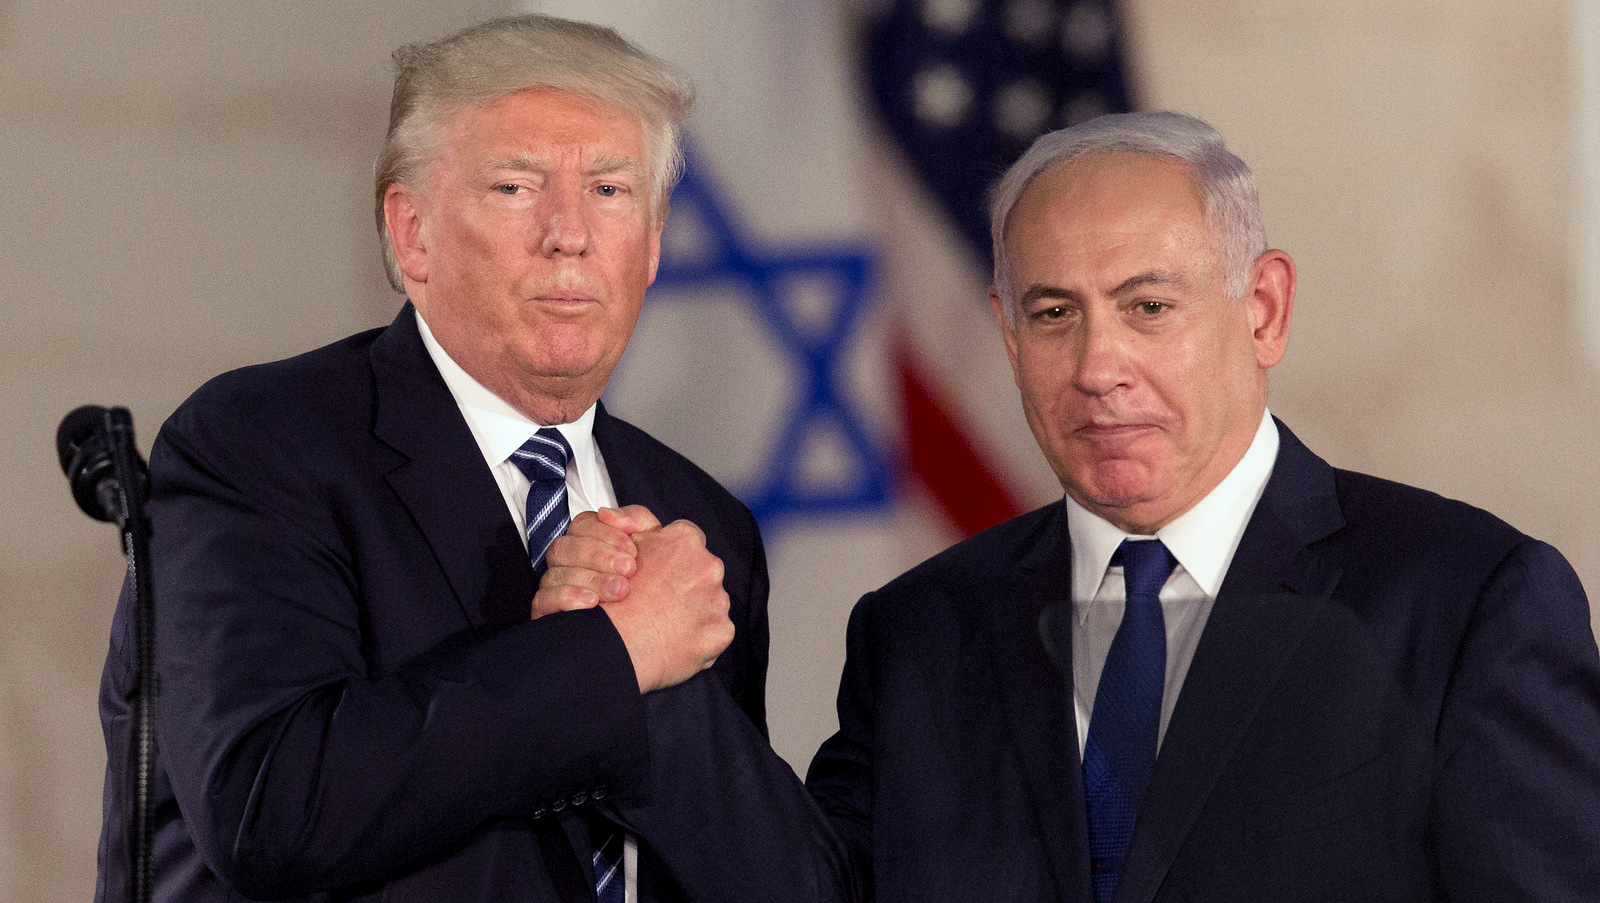 U.S. President Donald Trump and Israeli Prime Minister Benjamin Netanyahu shake hands at the Israel Museum, in Jerusalem, May 23, 2017. (AP/Sebastian Scheiner)